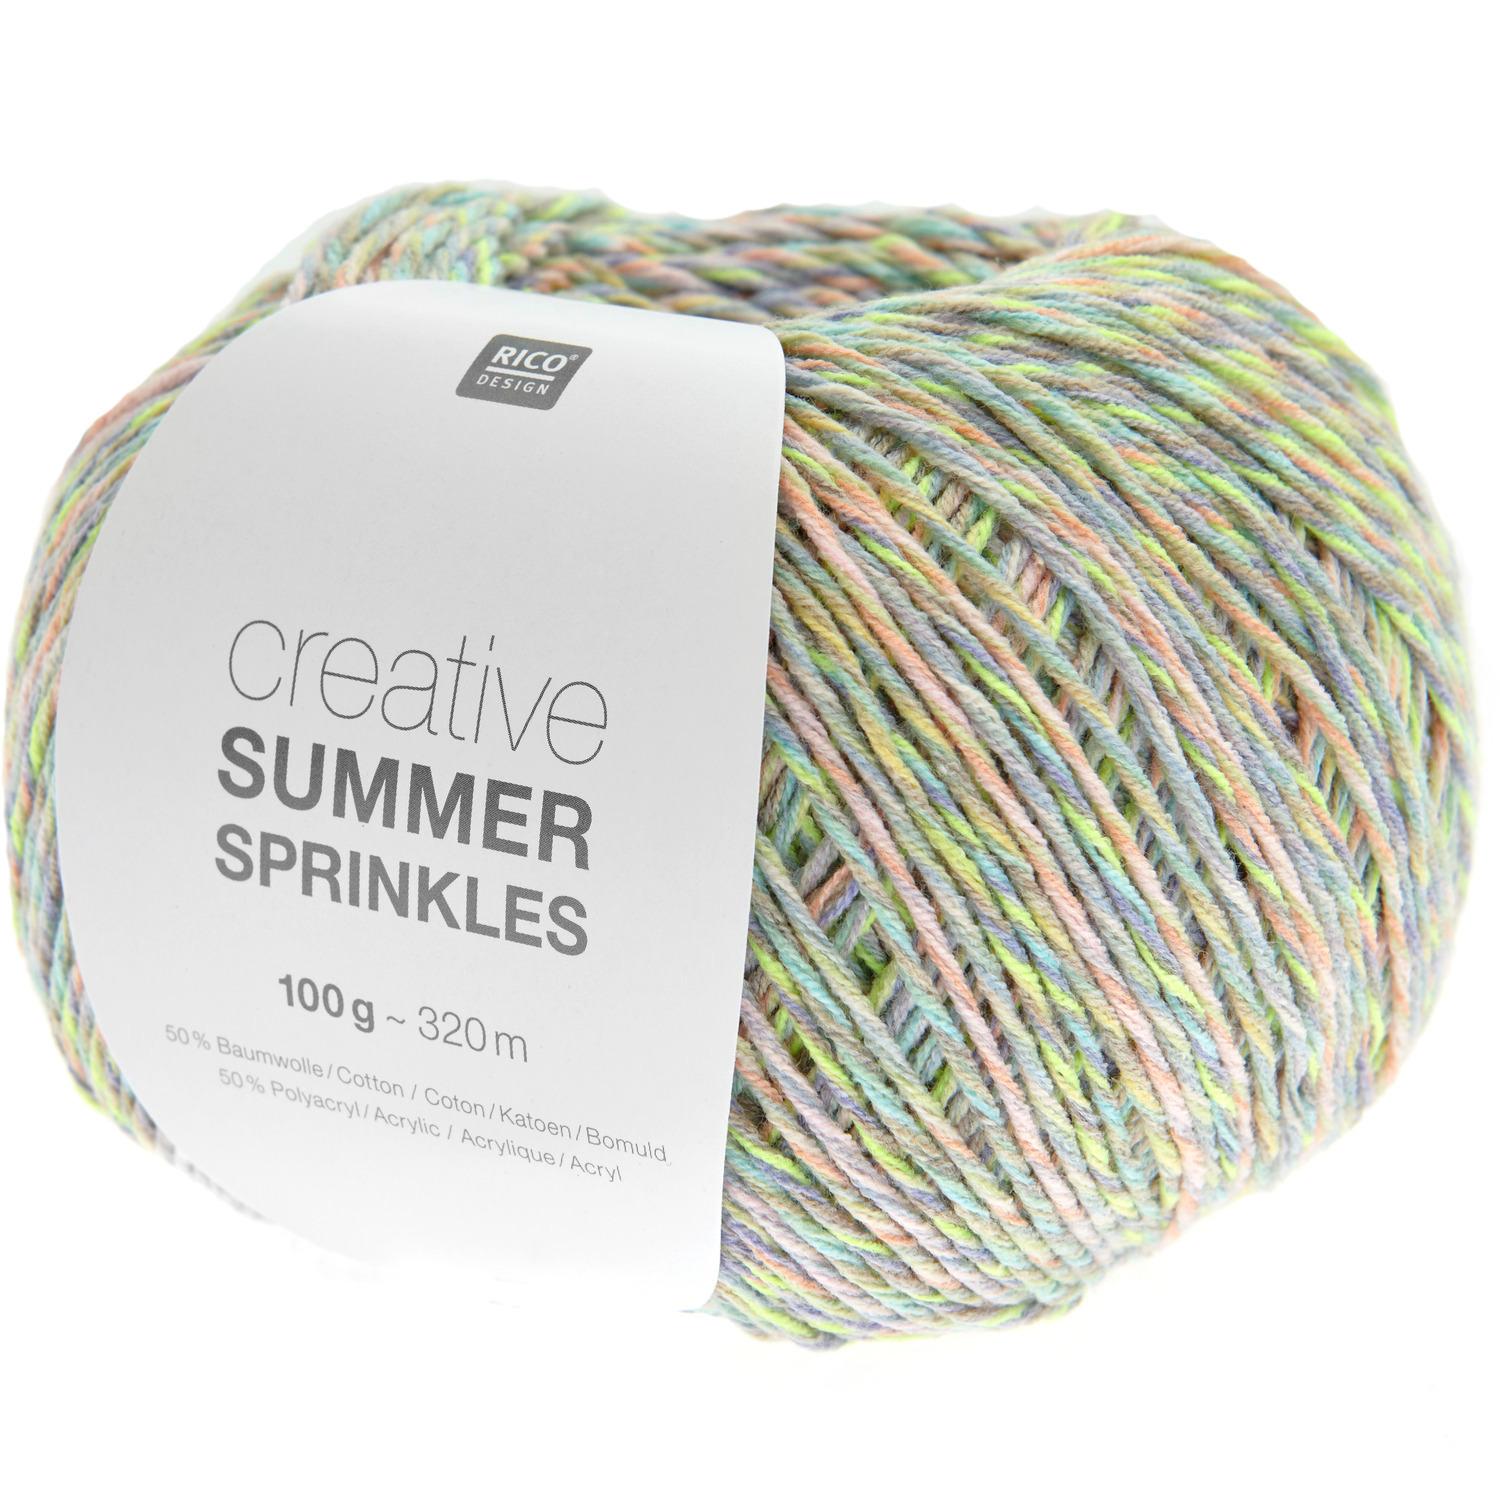 Creative Summer Sprinkles